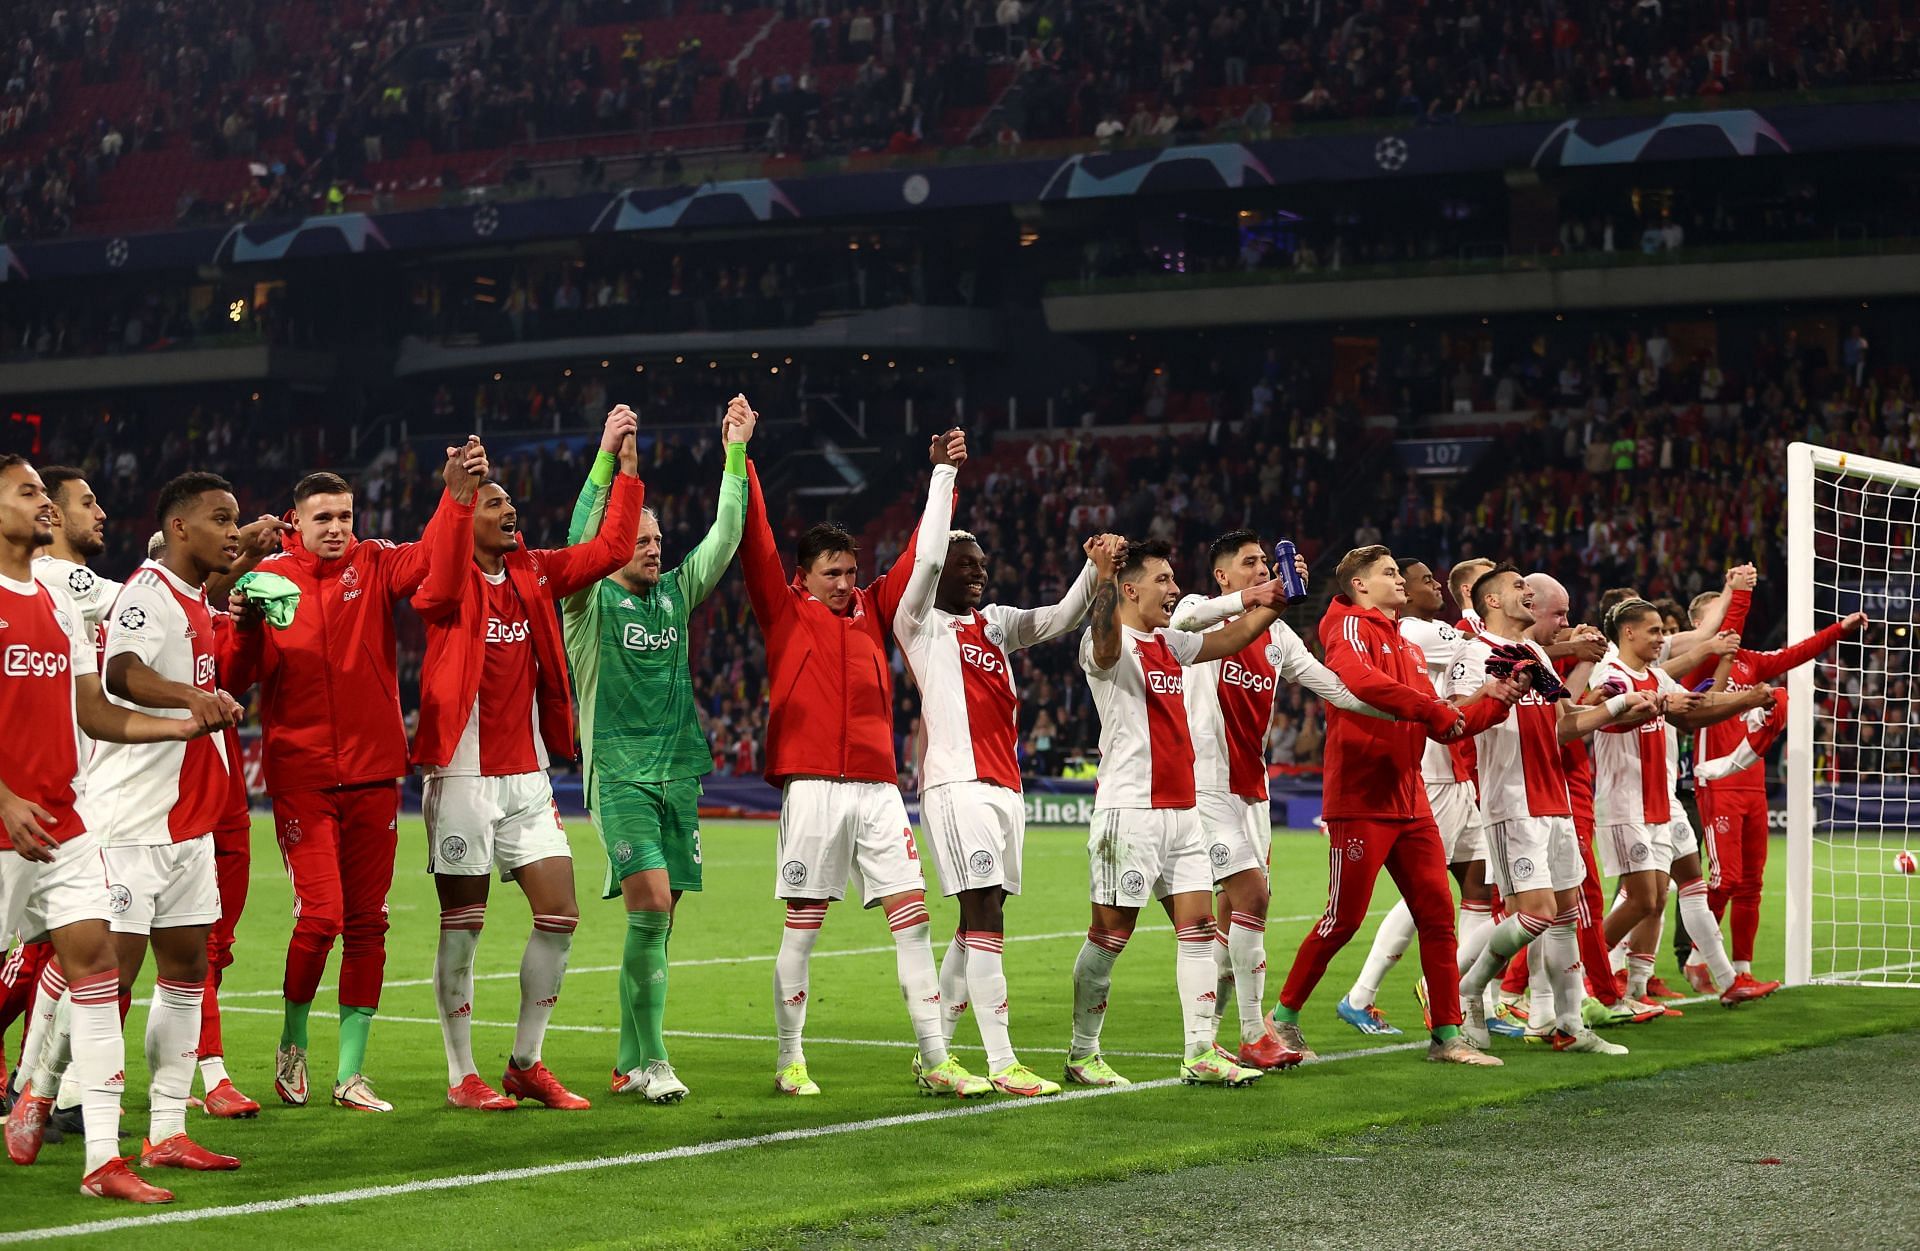 AFC Ajax will host PSV Eindhoven on Sunday - Eredivisie